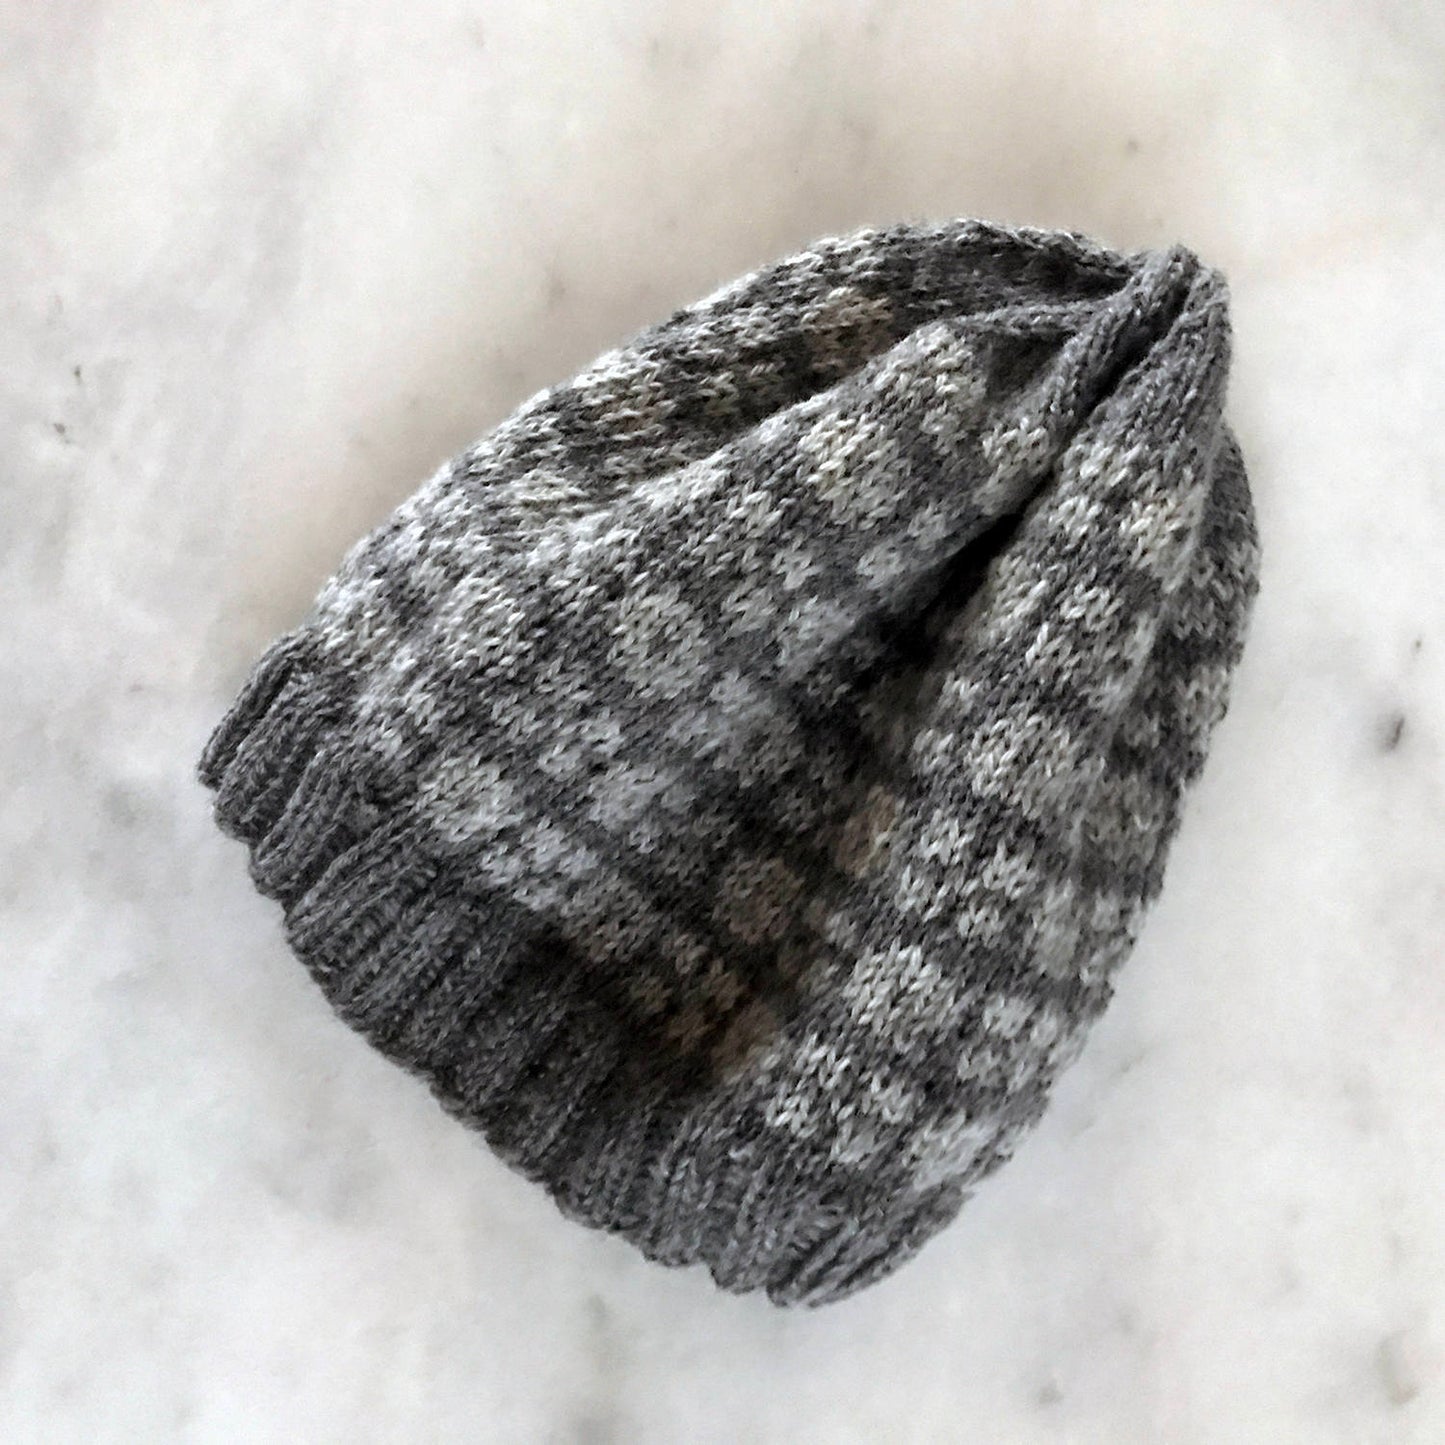 Men's winter hat.